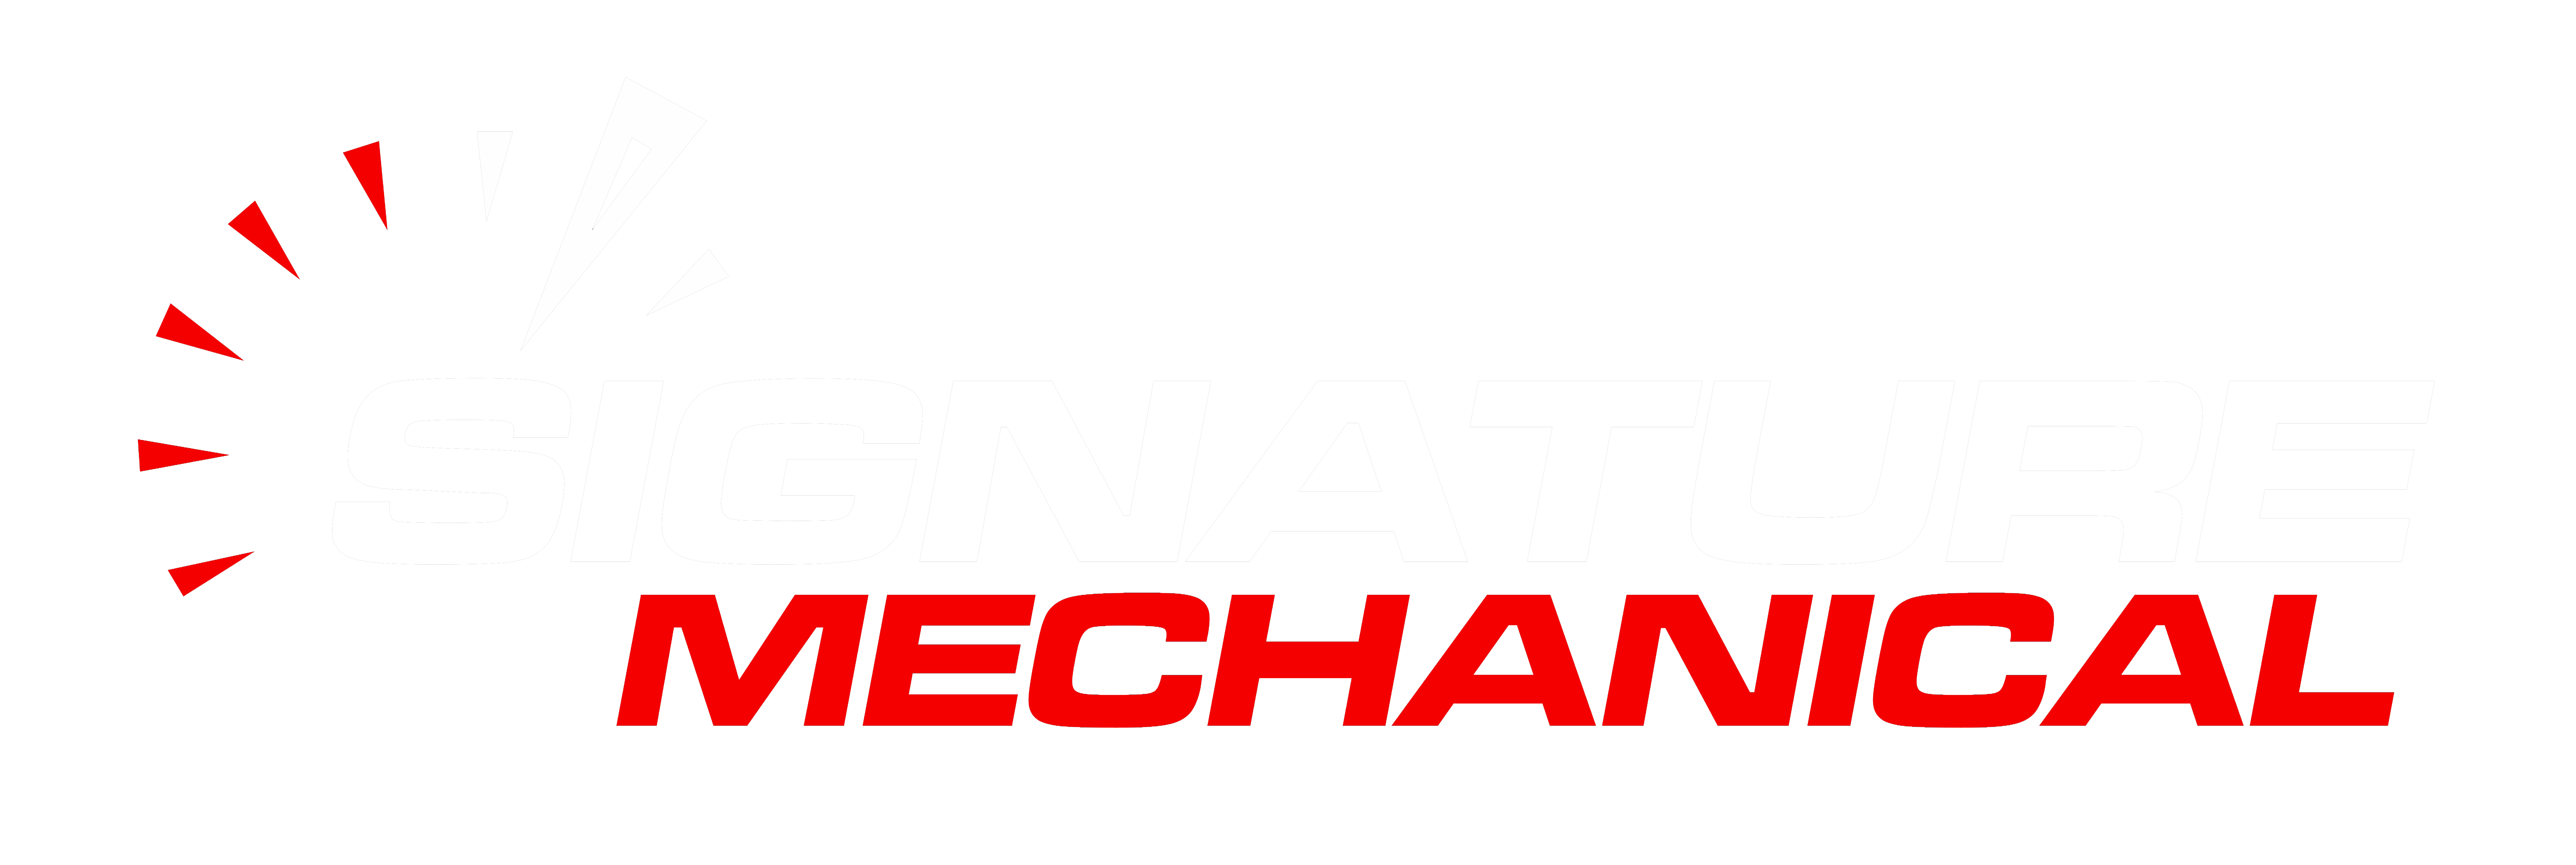 Signature Mechanical logo without black background - Mechanic Gladstone